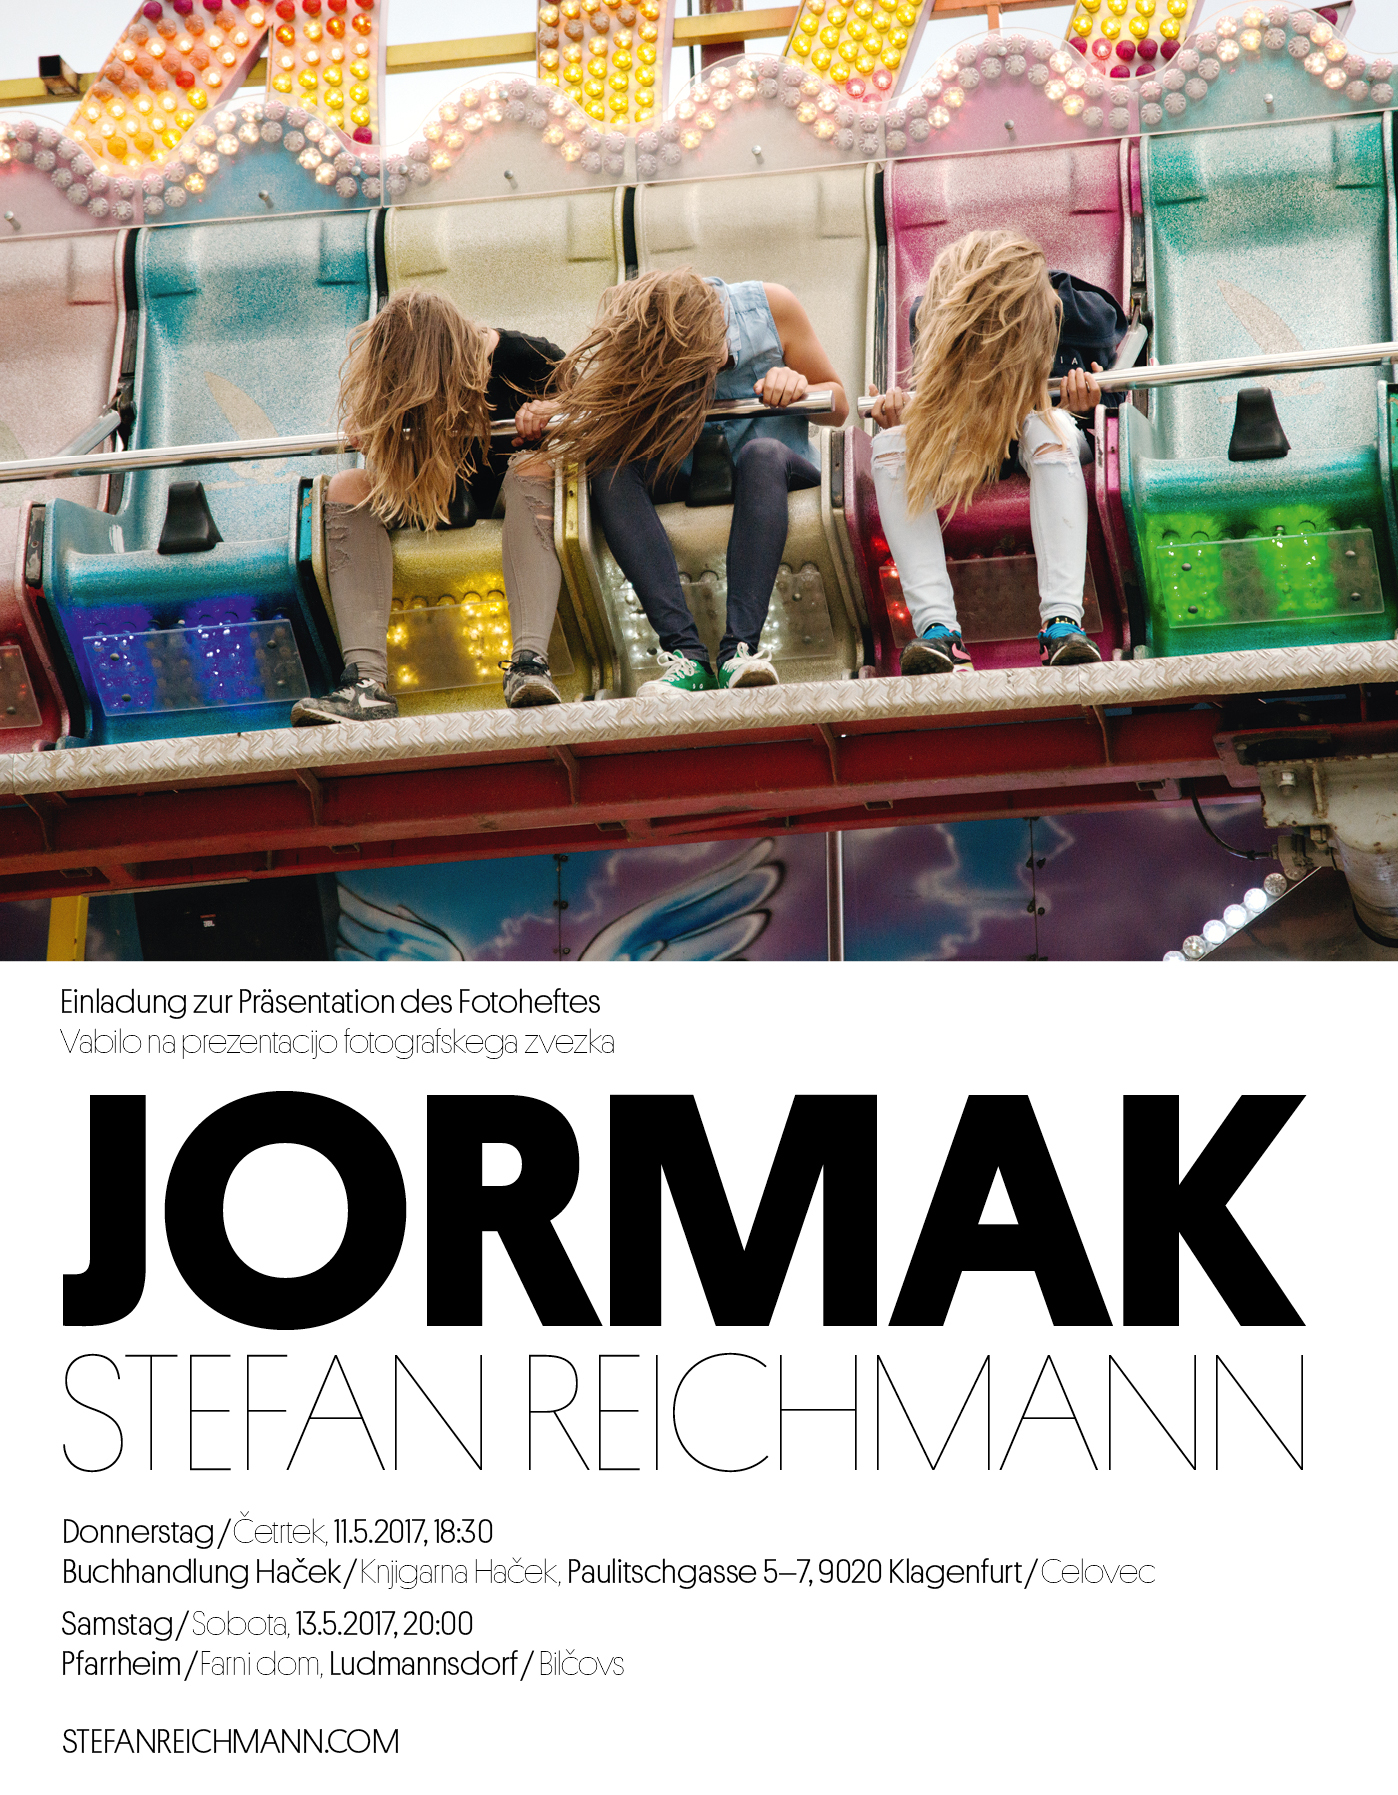 JORMAK Stefan Reichmann 11.05.17